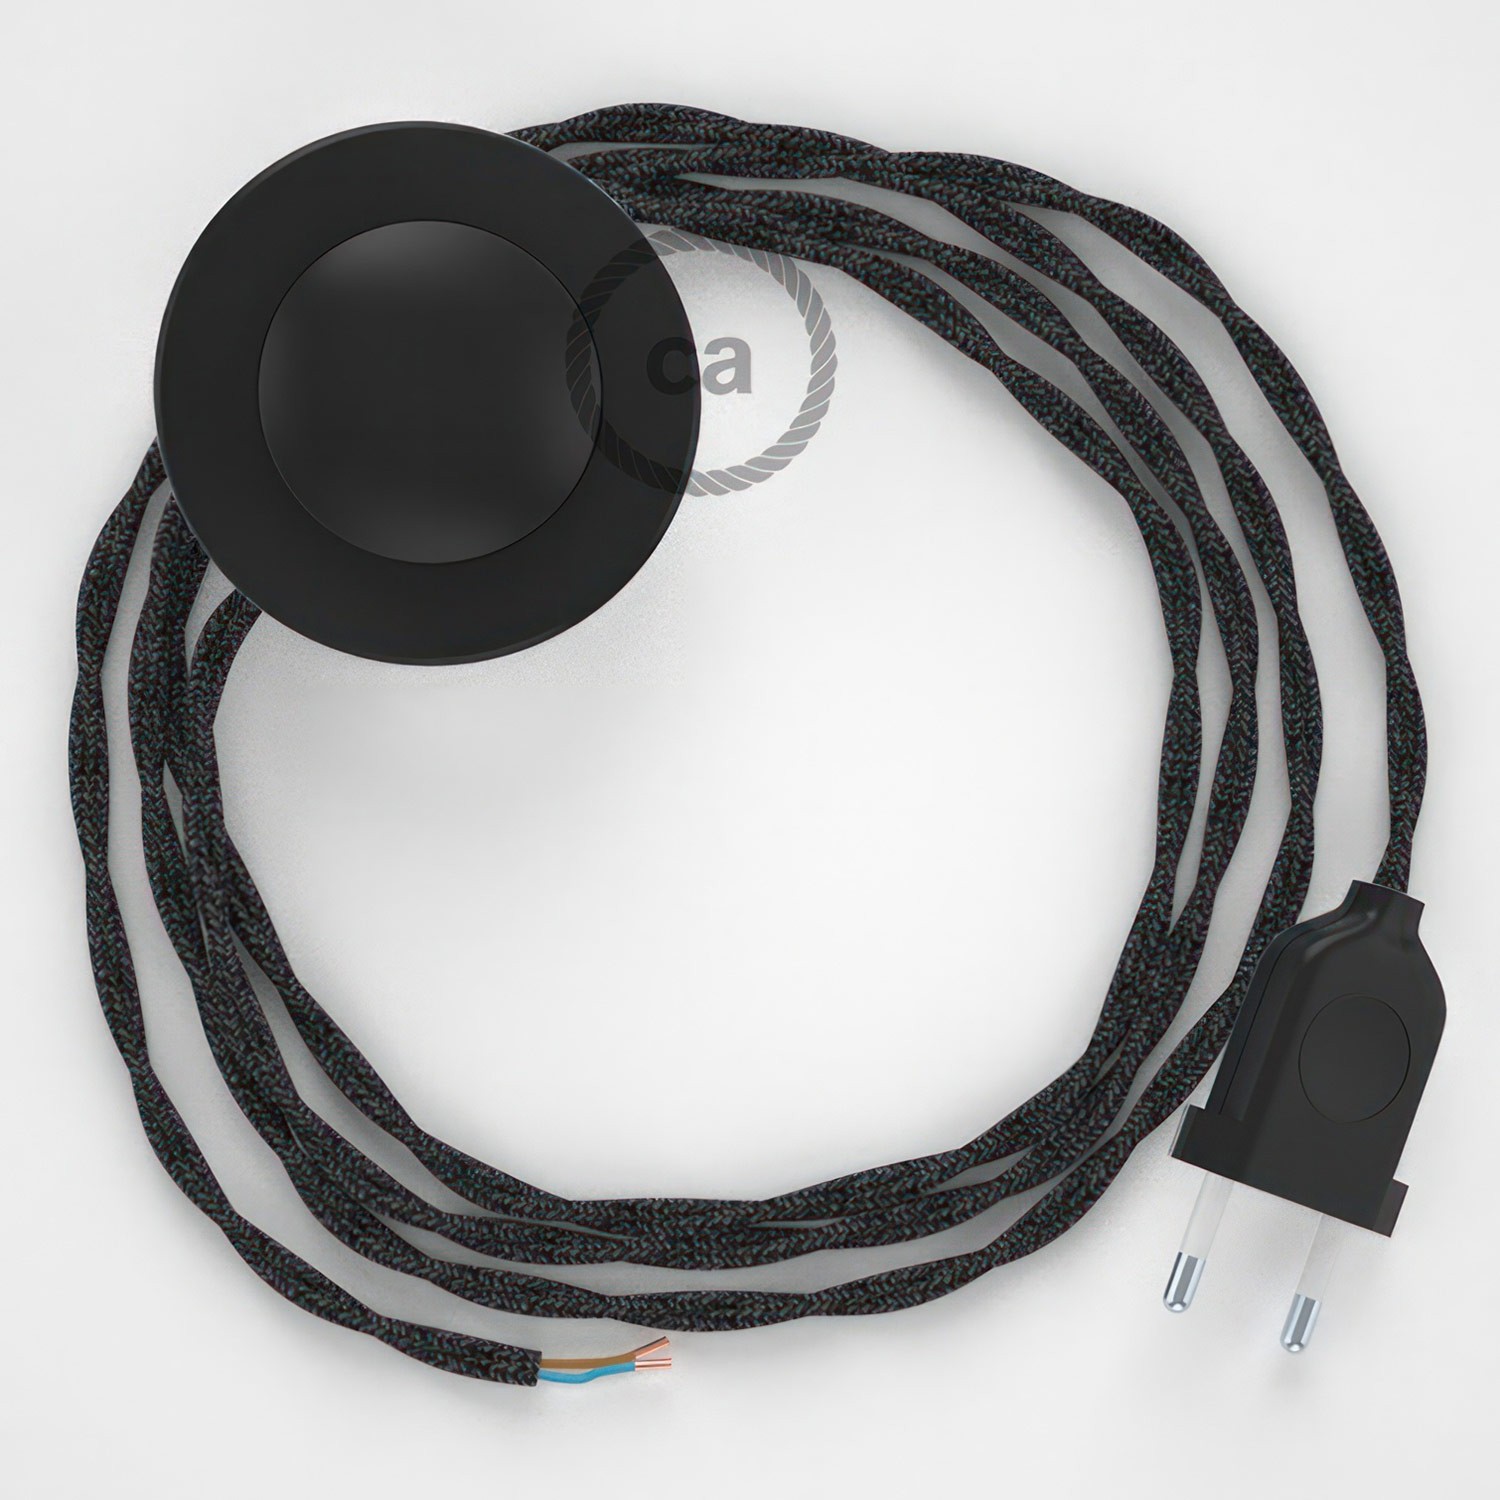 Cableado para lámpara de pie, cable TN03 Lino Natural Antracita 3 m. Elige tu el color de la clavija y del interruptor!